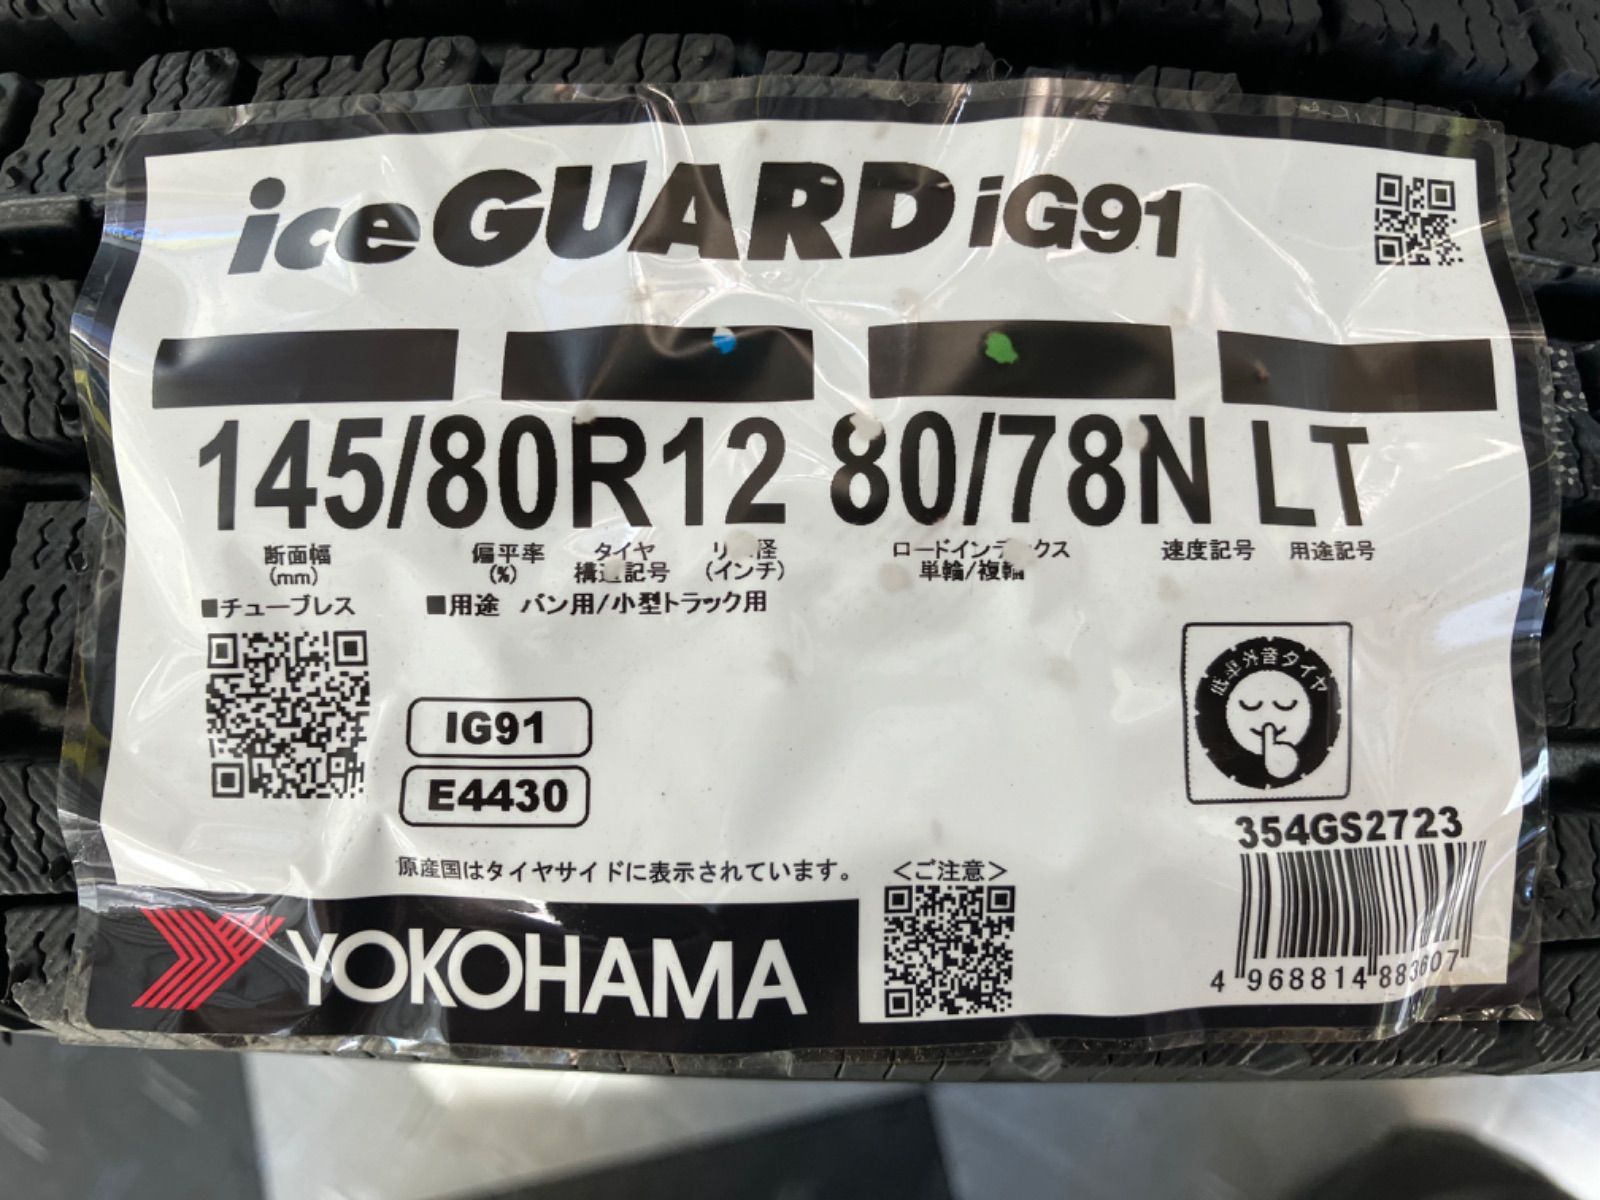 送料込み］YOKOHAMA ice GUARD iG91 ヨコハマ アイスガード i G91 145/80R12 80/78N LT  新品スタッドレスタイヤ4本 軽バン、軽トラに。 - メルカリ